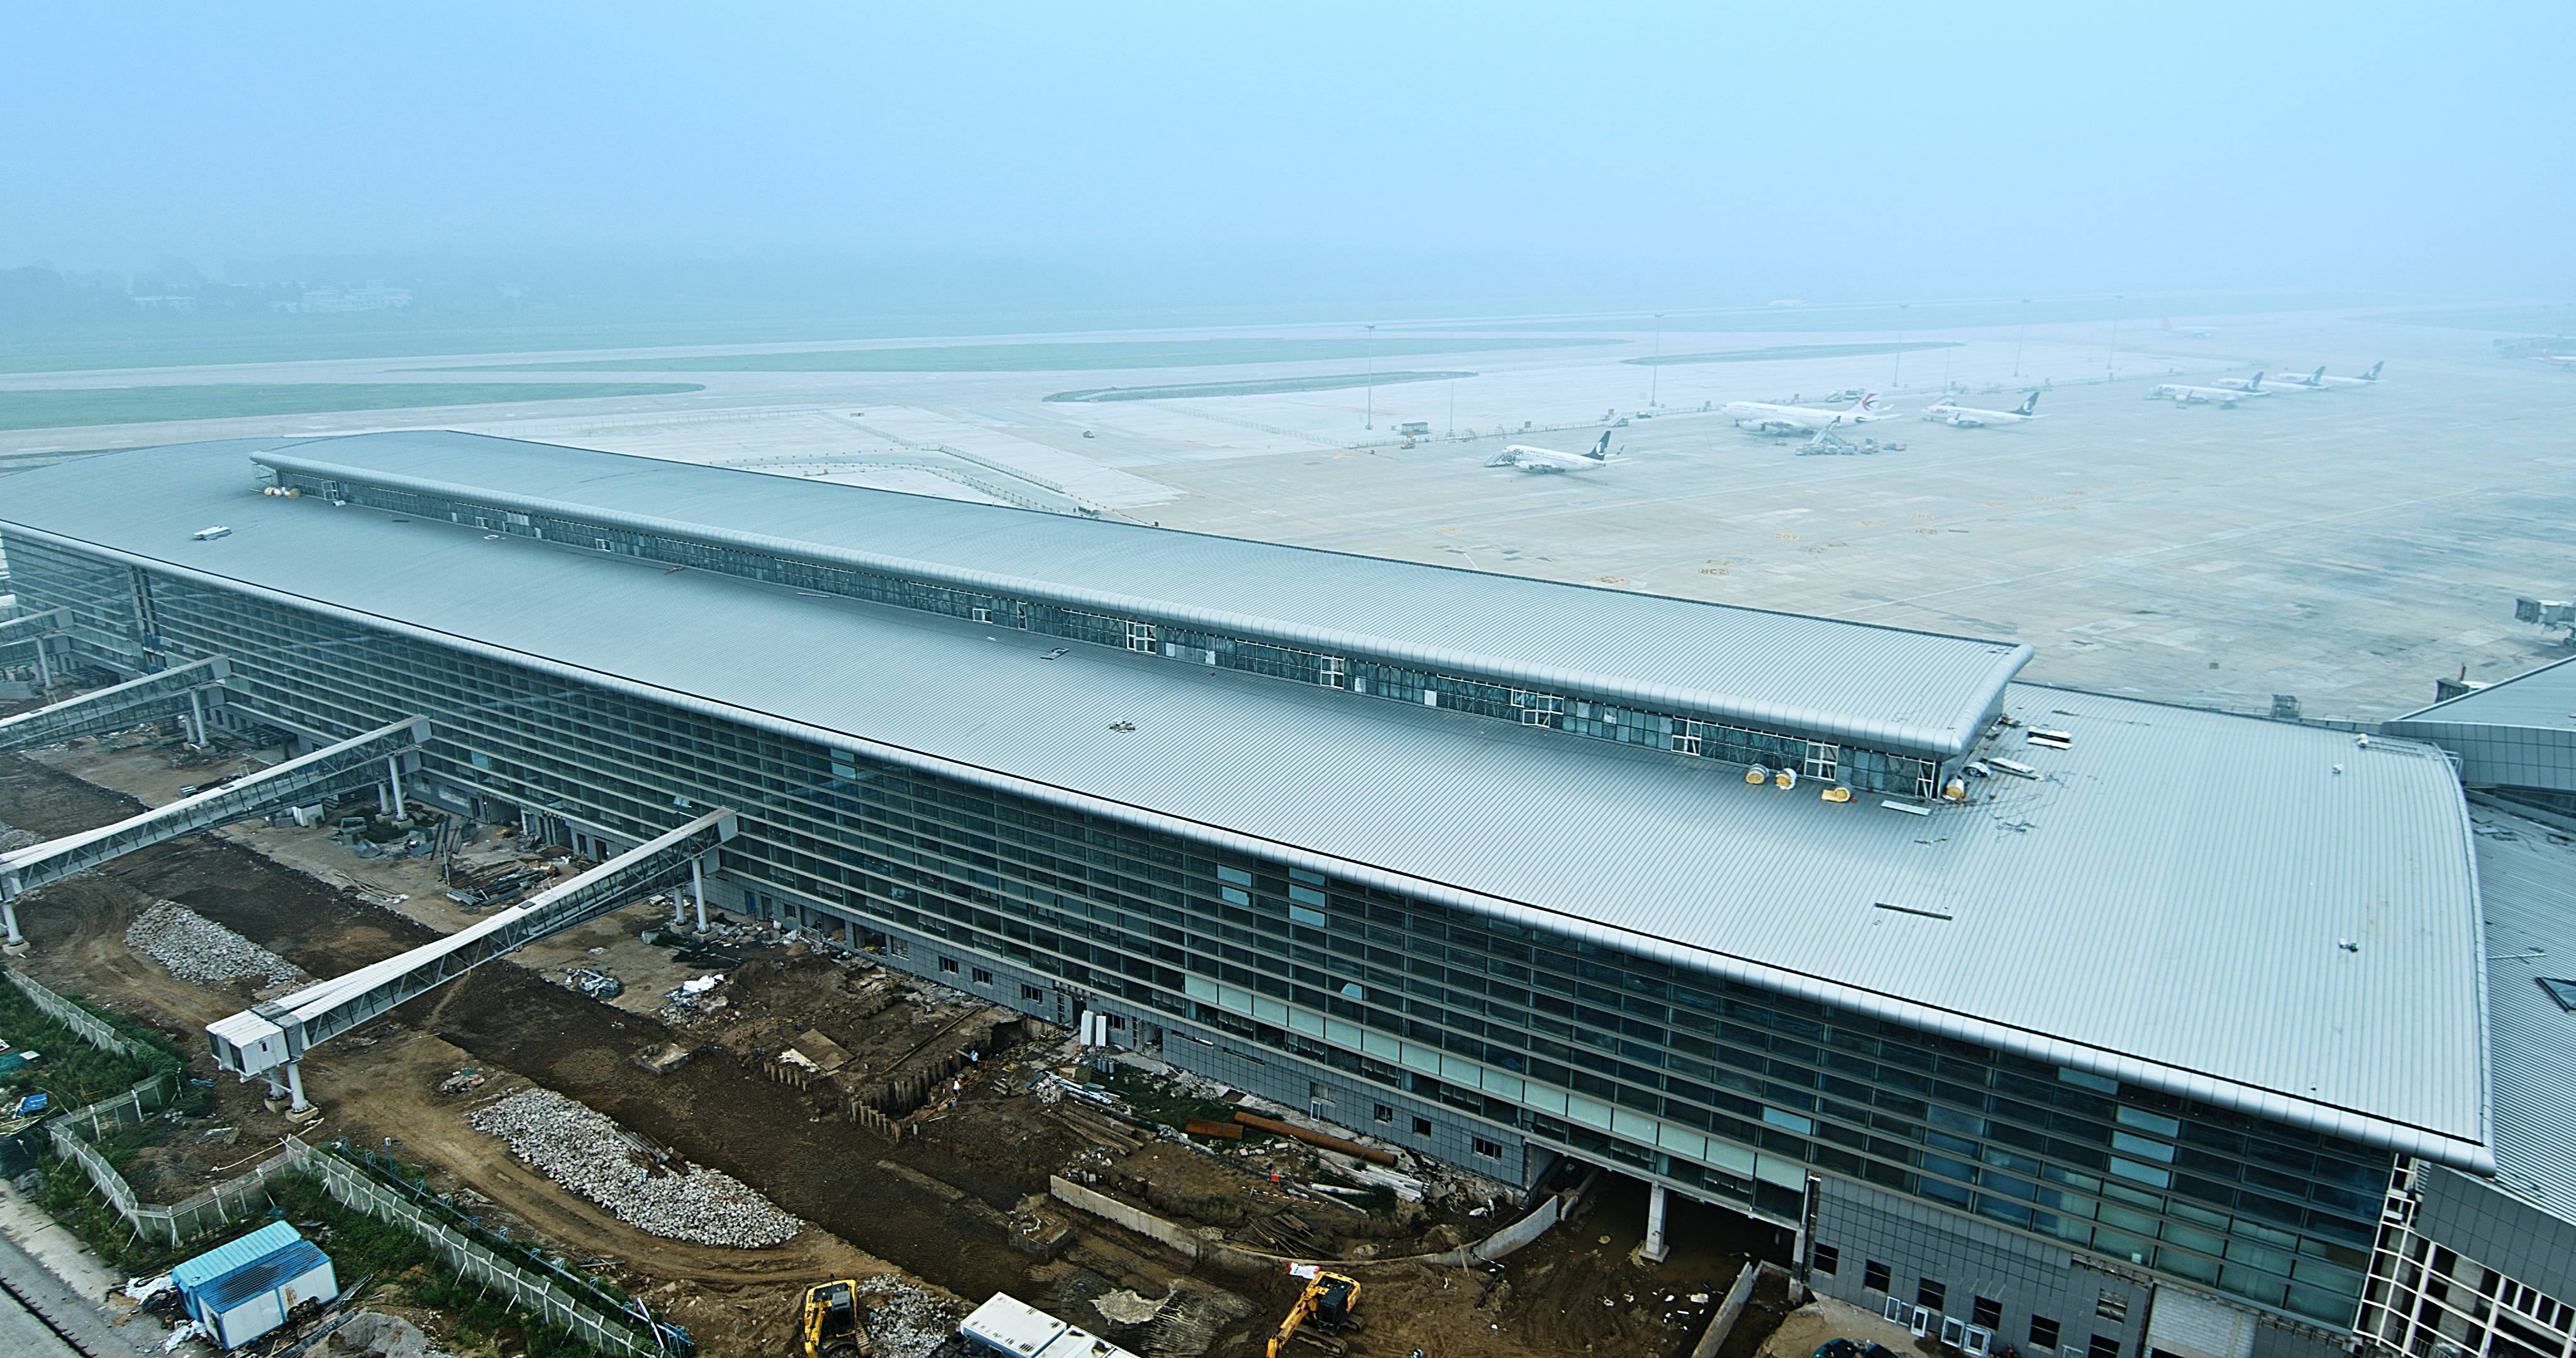 济南机场北指廊工程主体结构施工完成 计划今年底投入使用